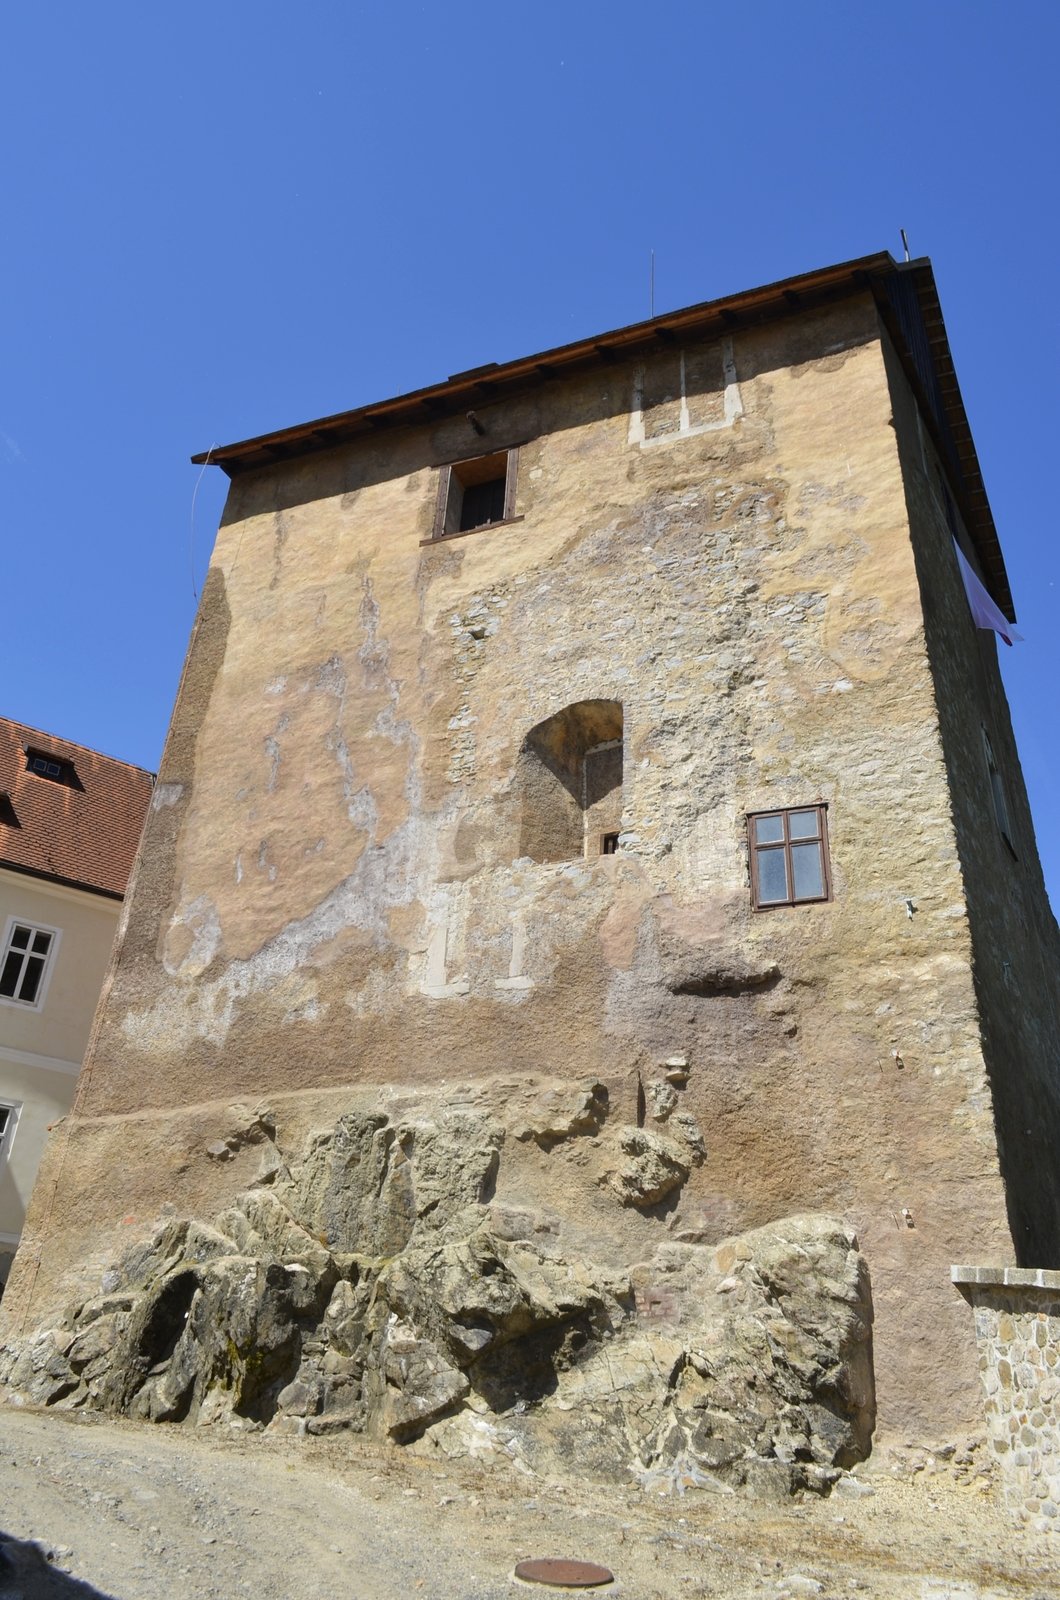 V této věži v Bečově byl relikviář sv. Maura ukrytý.